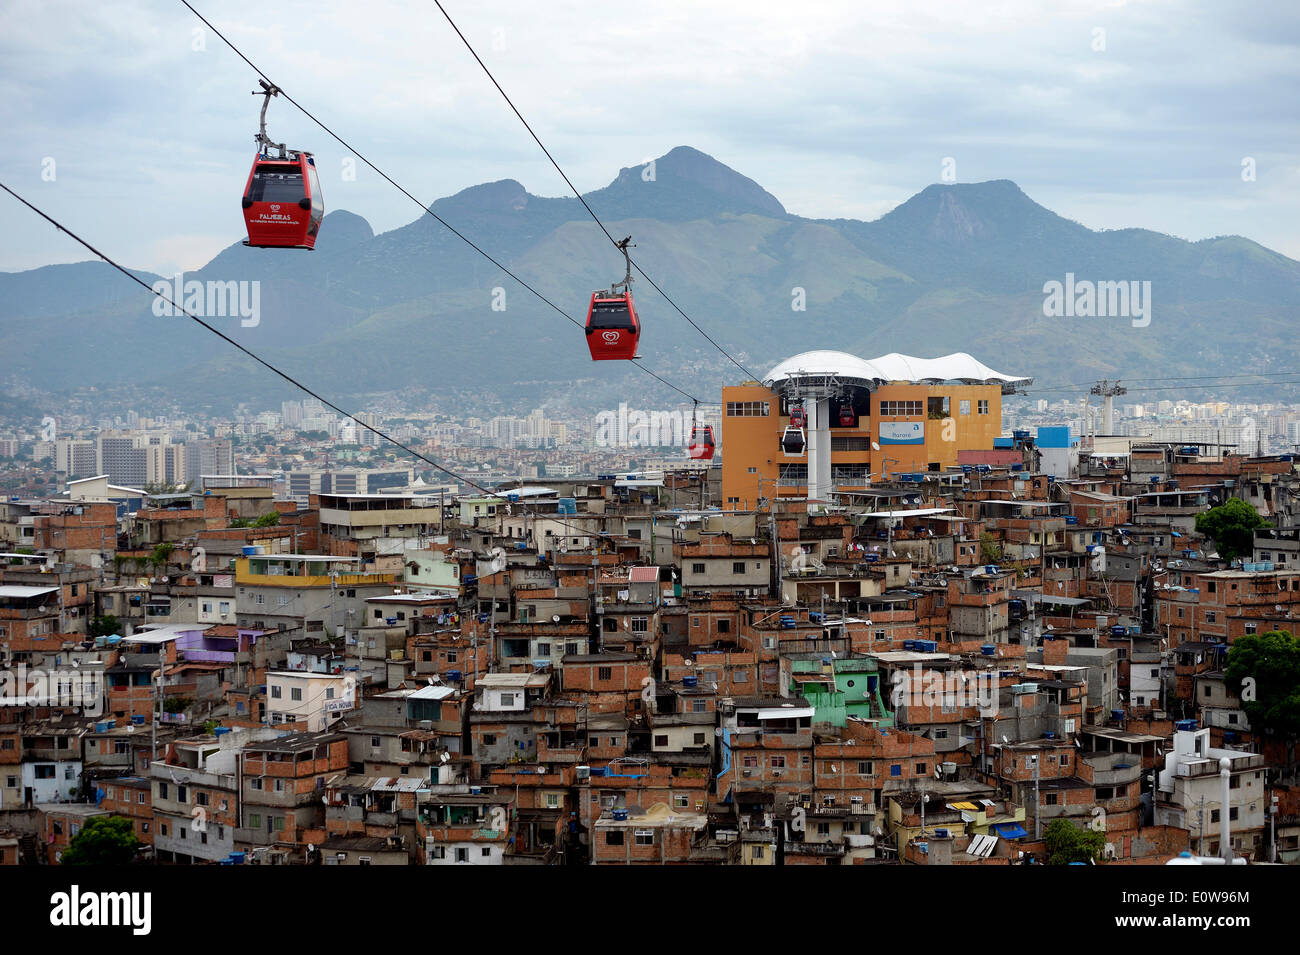 Complexo do Alemao favela, a cable car connects several built-up hills, Rio de Janeiro, Brazil Stock Photo